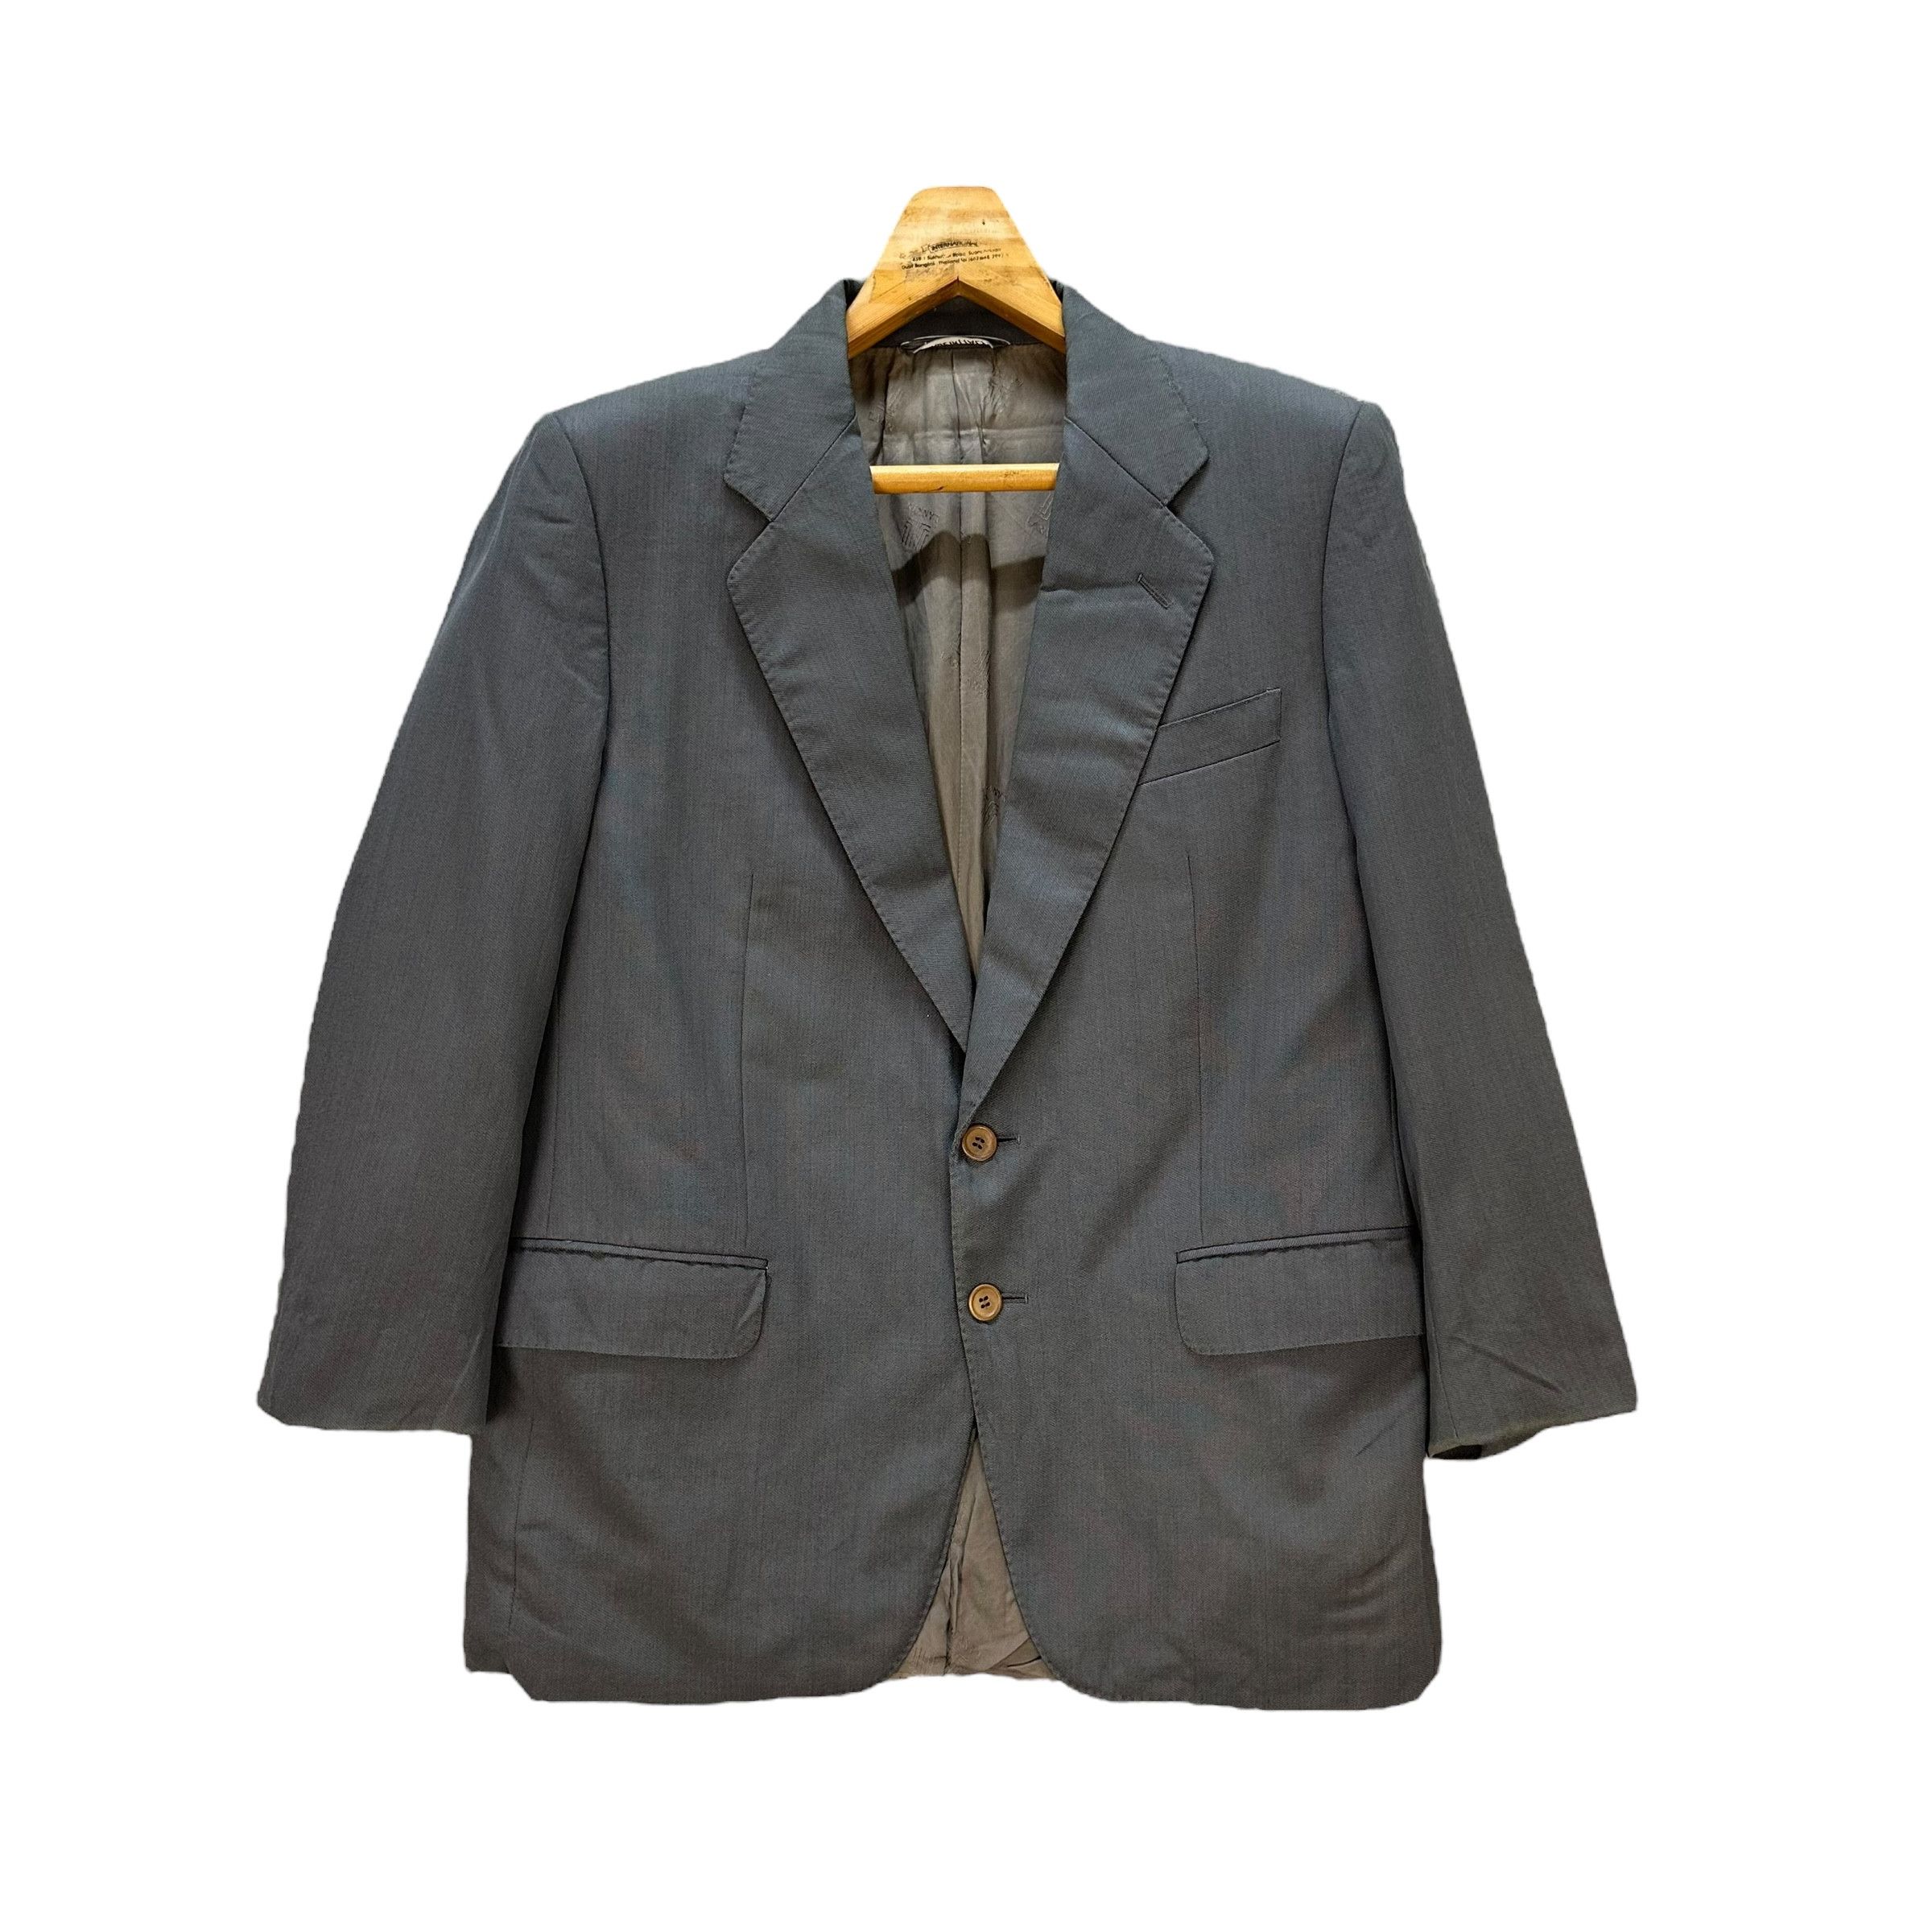 Lanvin Paris Suit Jacket / Blazer #9139-61 - 1